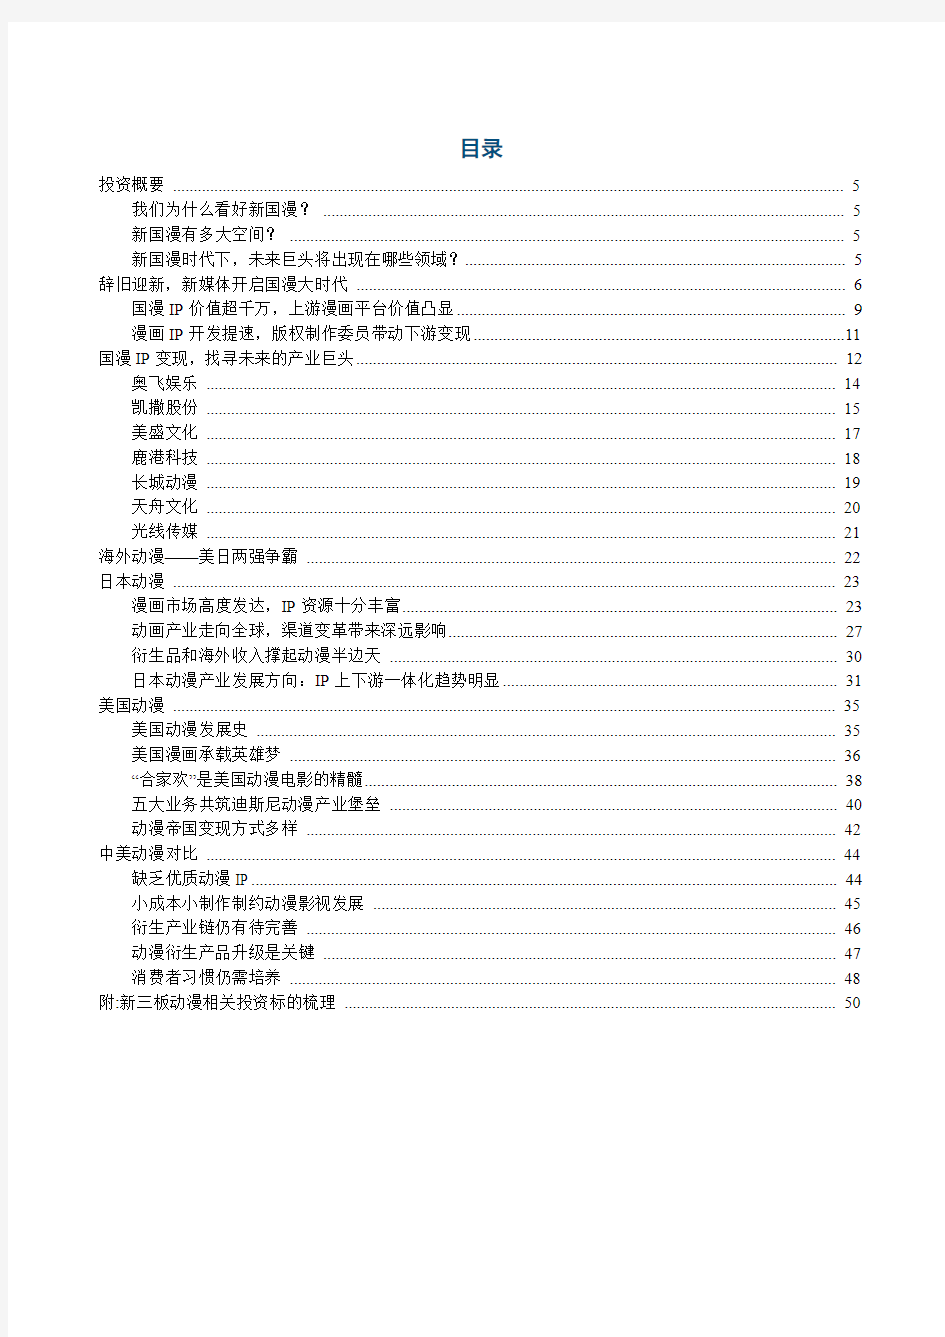 2018年中国动漫IP行业市场分析报告